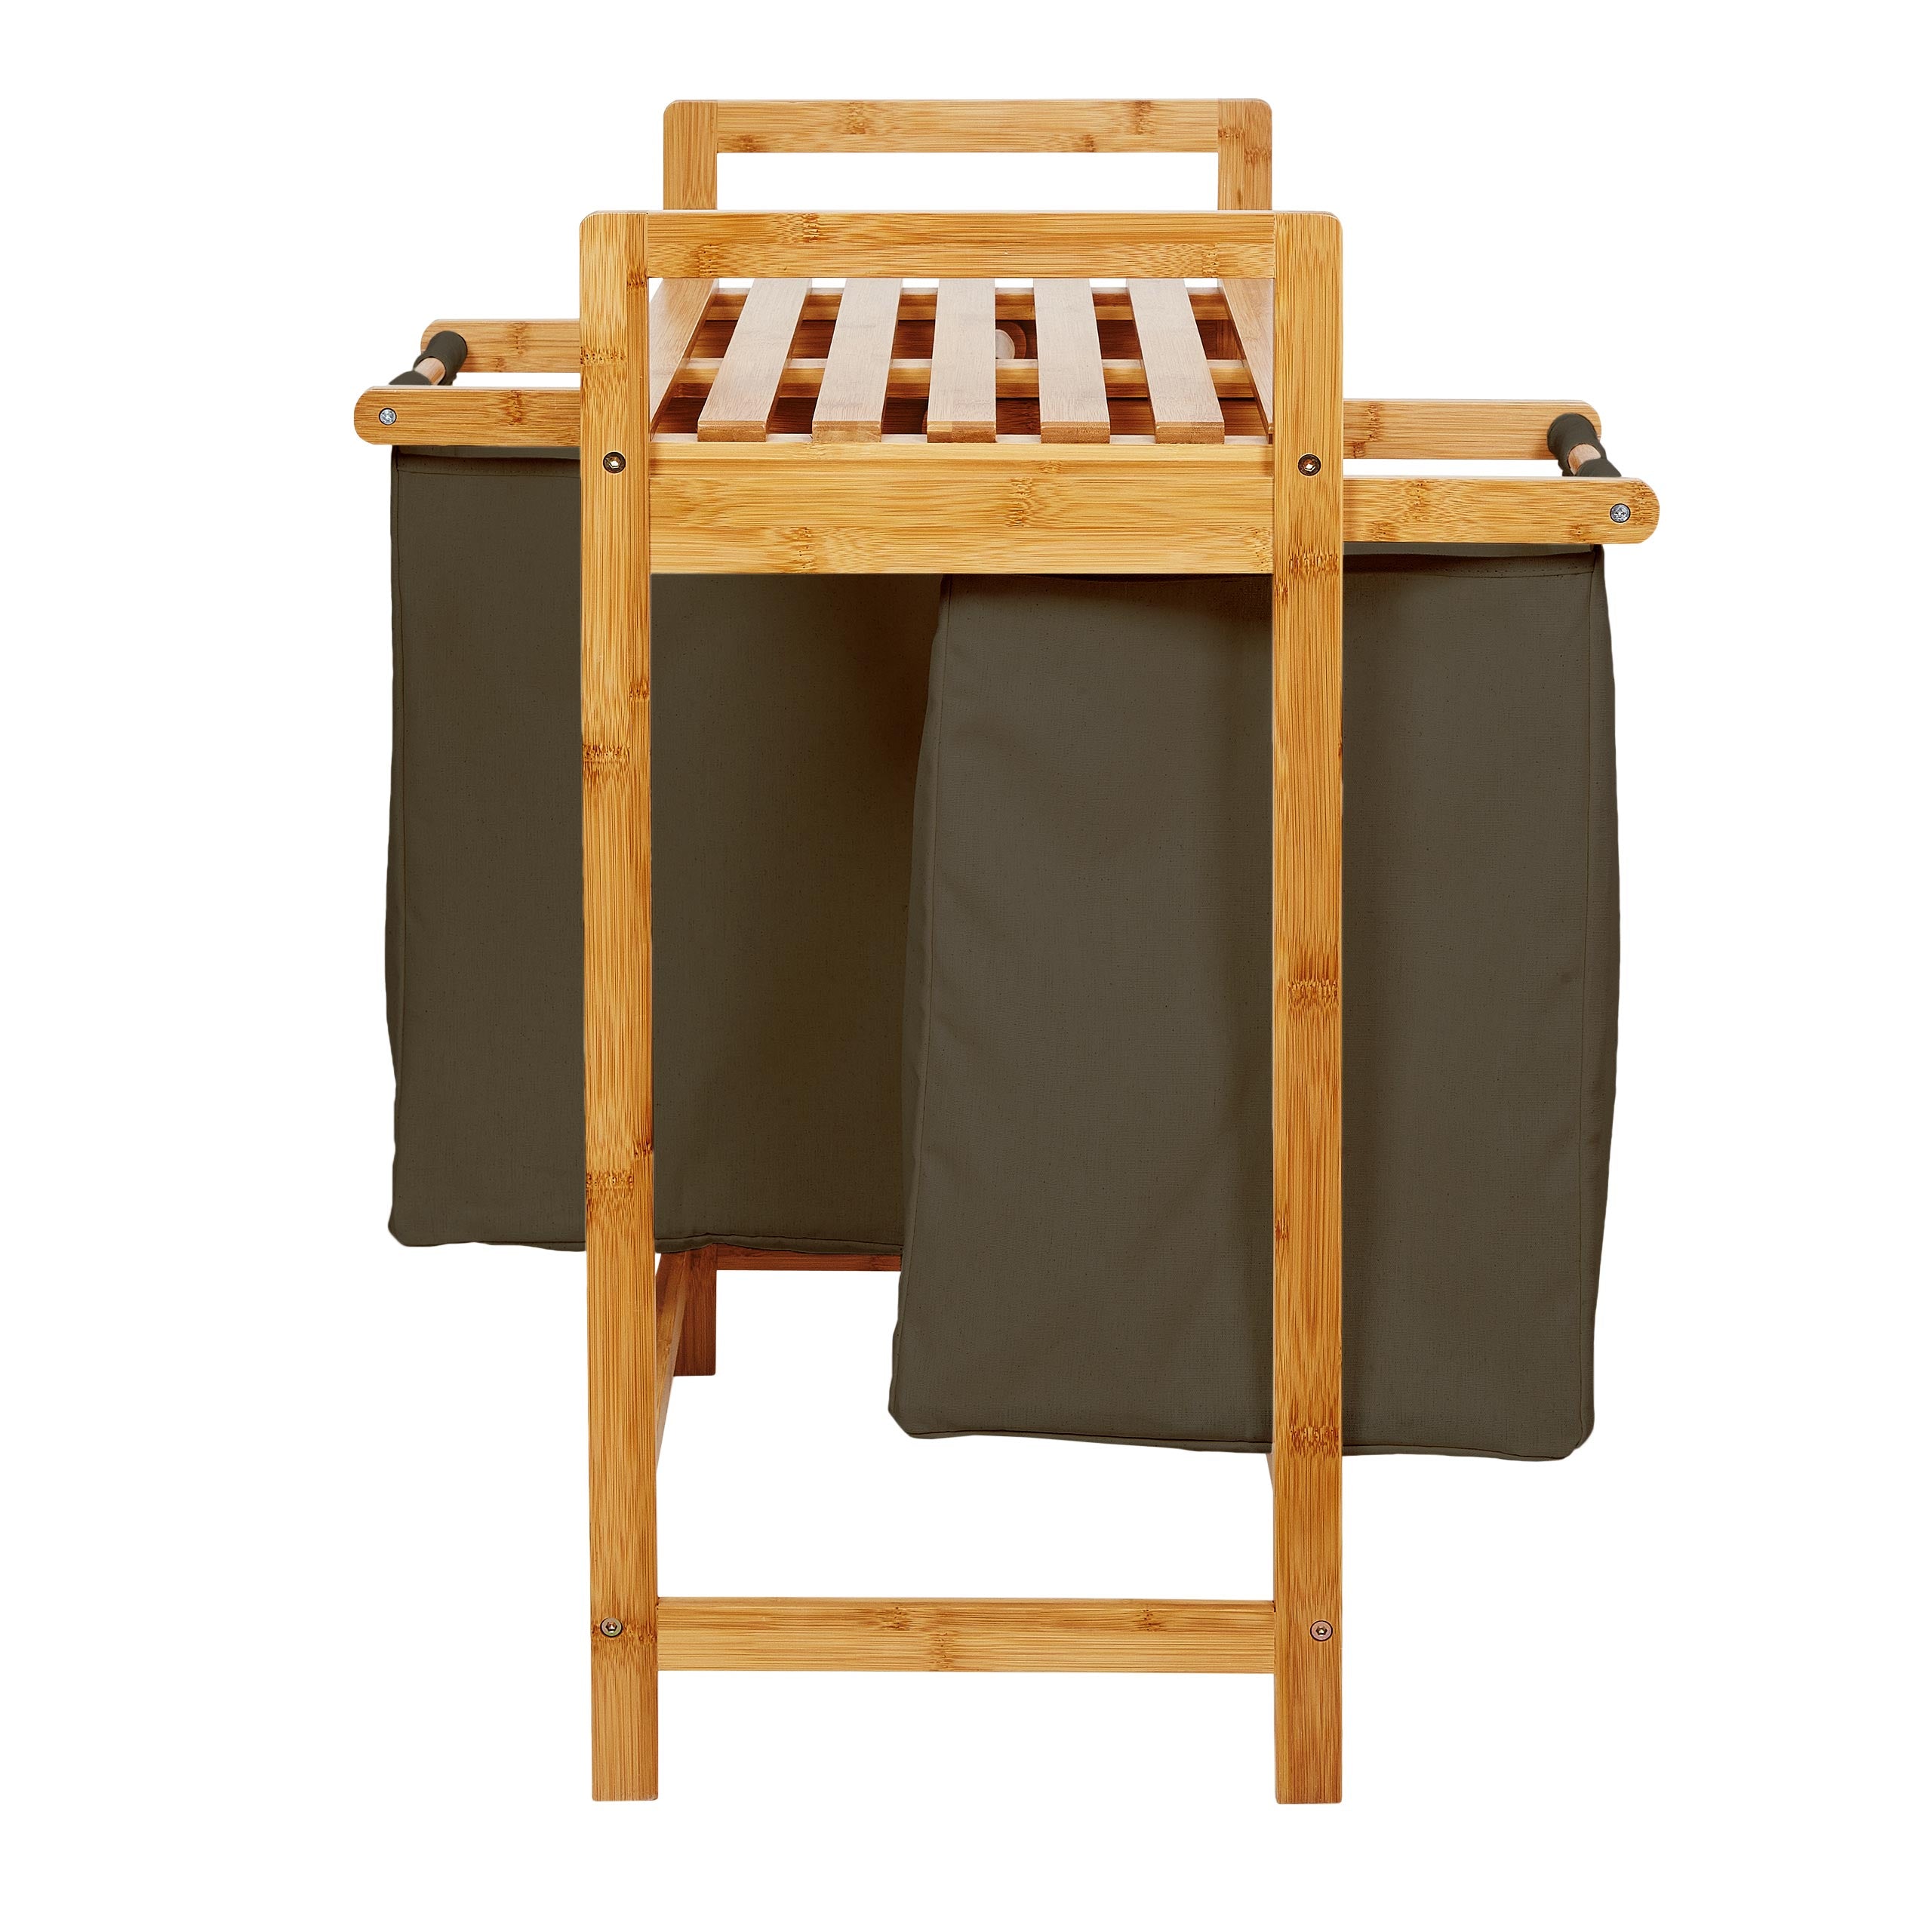 Wäschekorb aus Bambus mit 2 ausziehbaren Wäschesäcken - Größe ca. 73 cm Höhe x 64 cm Breite x 33 cm Tiefe - Farbe Oliv